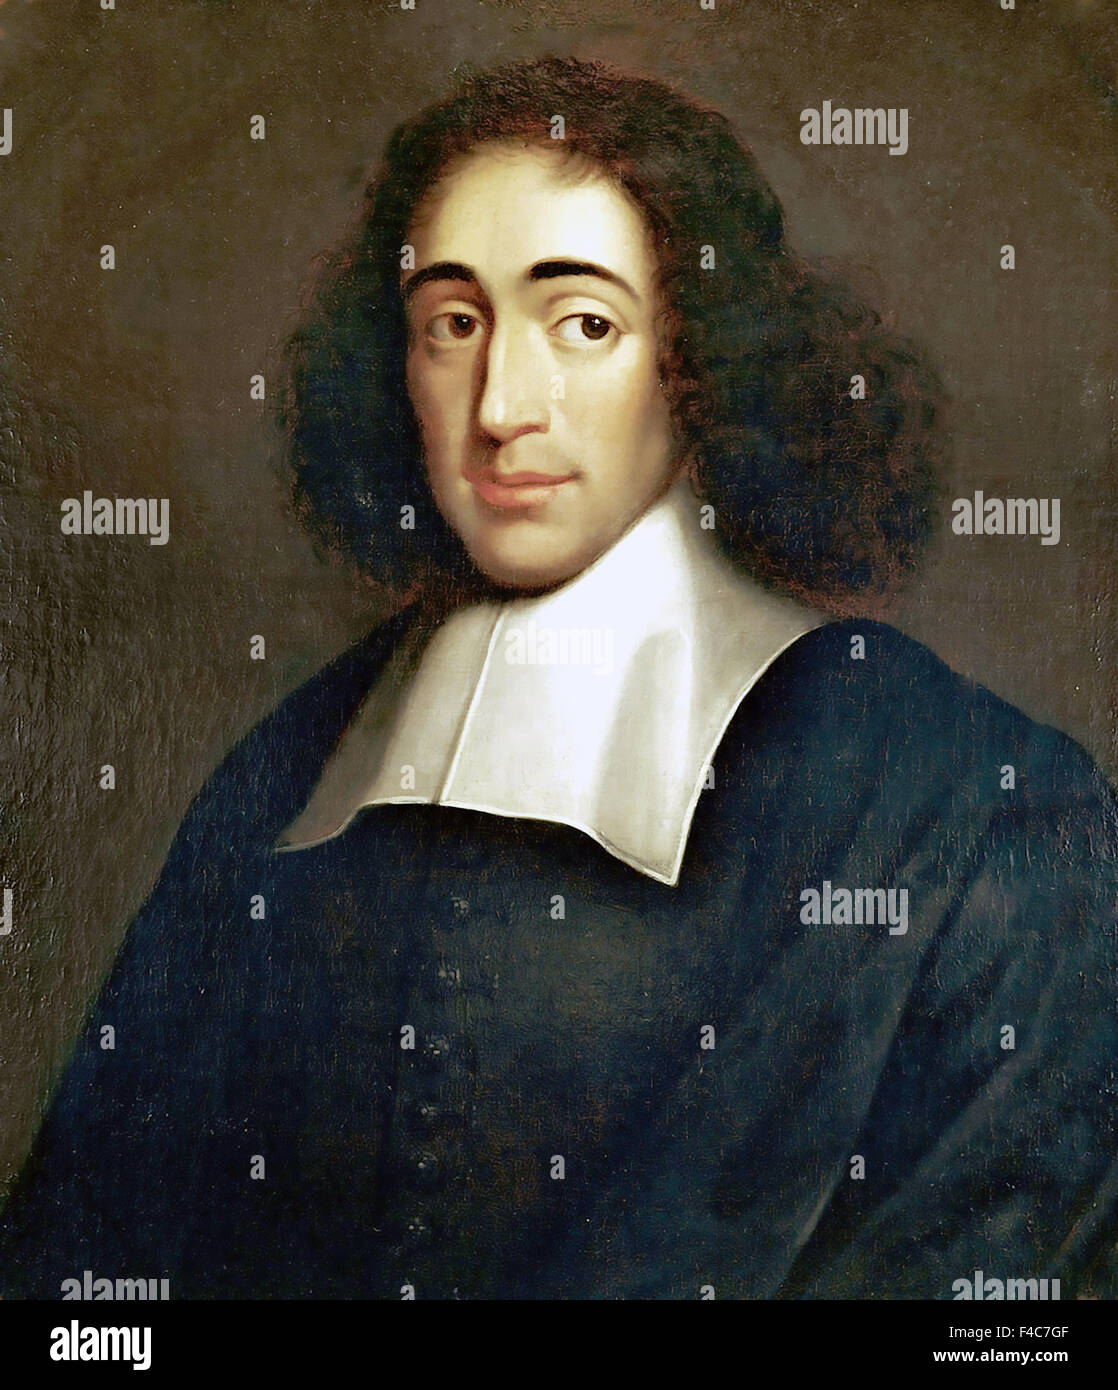 BARUCH SPINOZA (1632-1677) Dutch philosopher. Artist unknown. Stock Photo